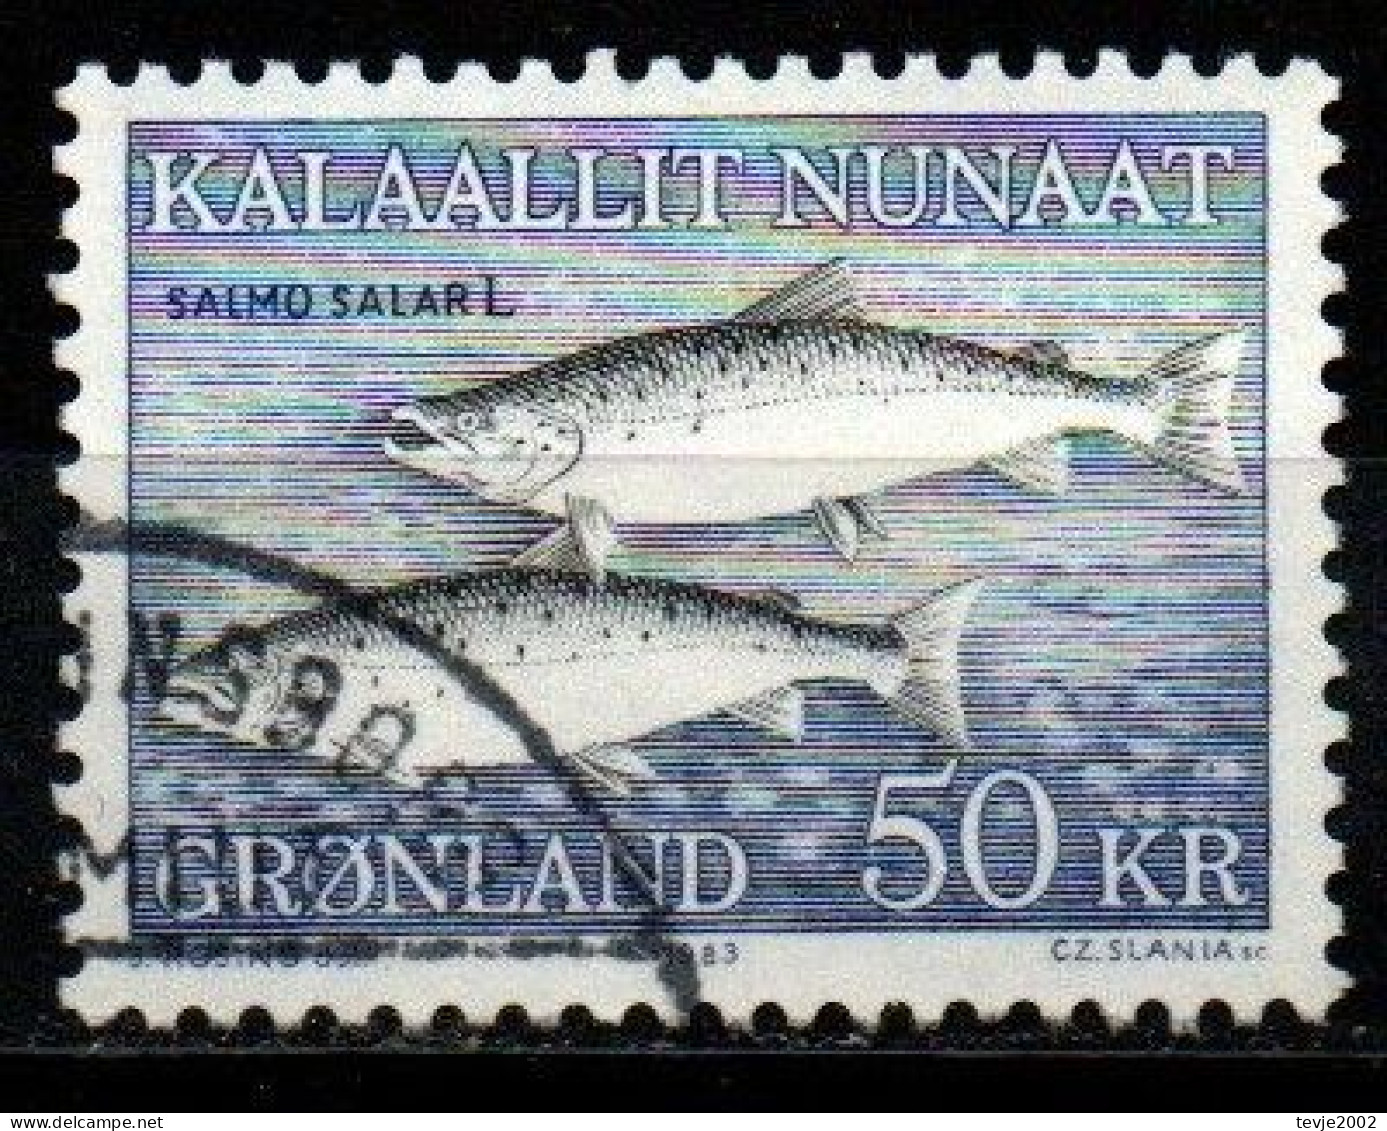 Grönland 1983 - Mi.Nr. 140 - Gestempelt Used - Tiere Animals Fische Fishes - Usados